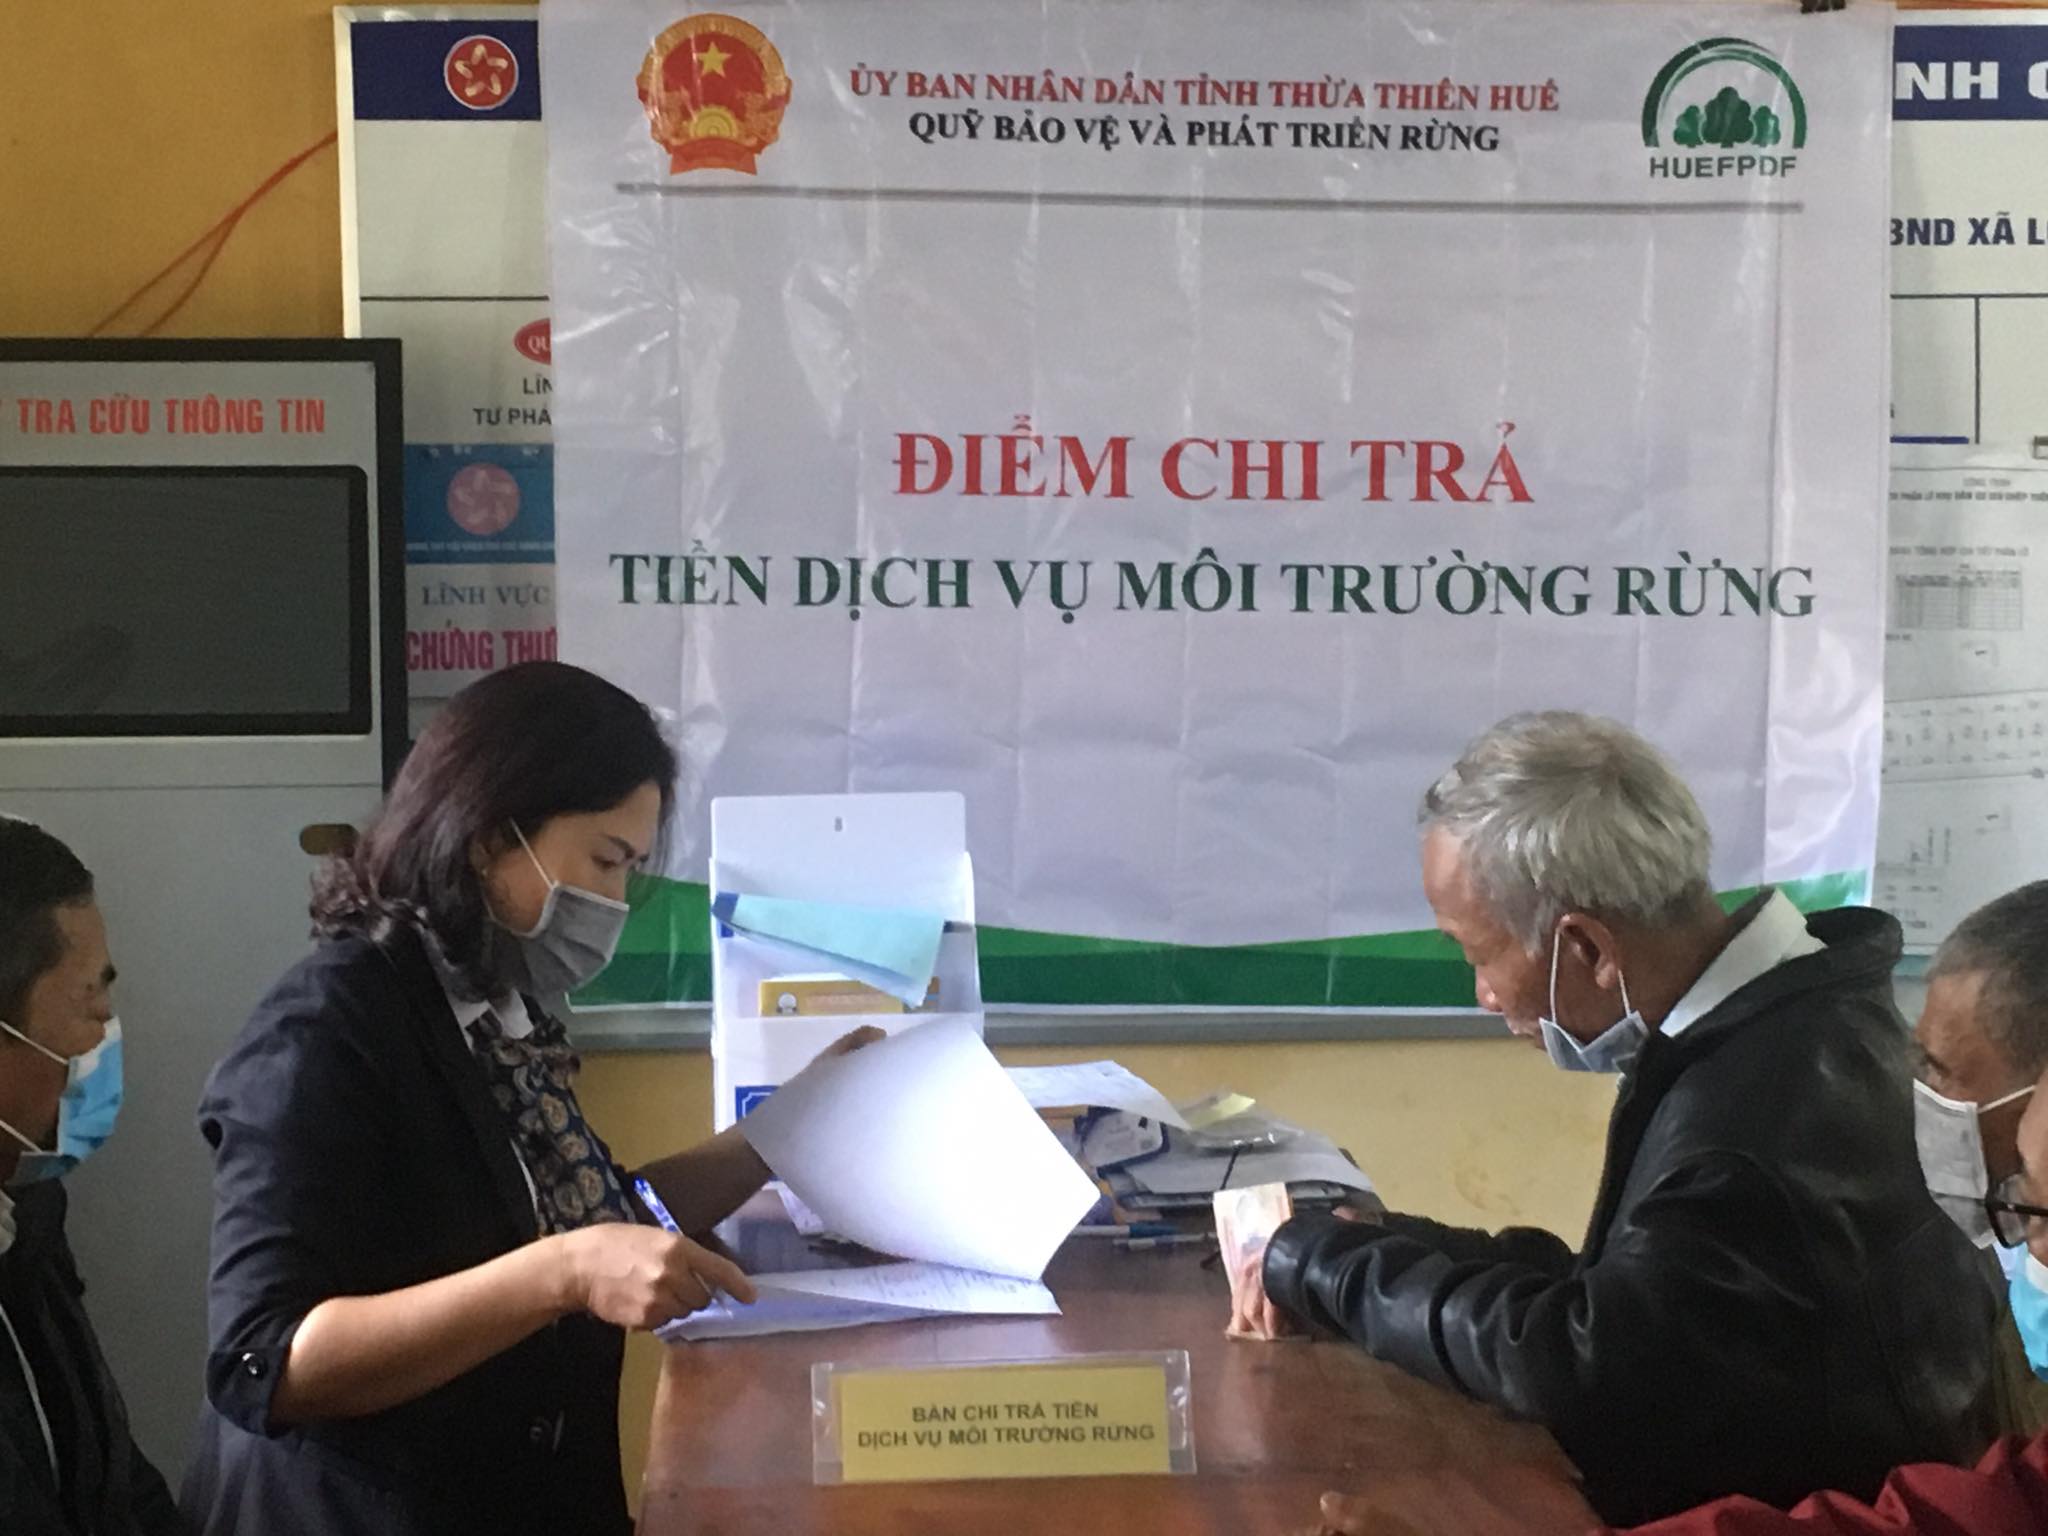 Quỹ Bảo vệ và Phát triển rừng tỉnh Thừa Thiên Huế tiến hành chi trả tiền dịch vụ môi trường rừng (DVMTR) năm 2020 cho các cộng đồng, nhóm hộ, hộ gia đình thuộc huyện Phú Lộc